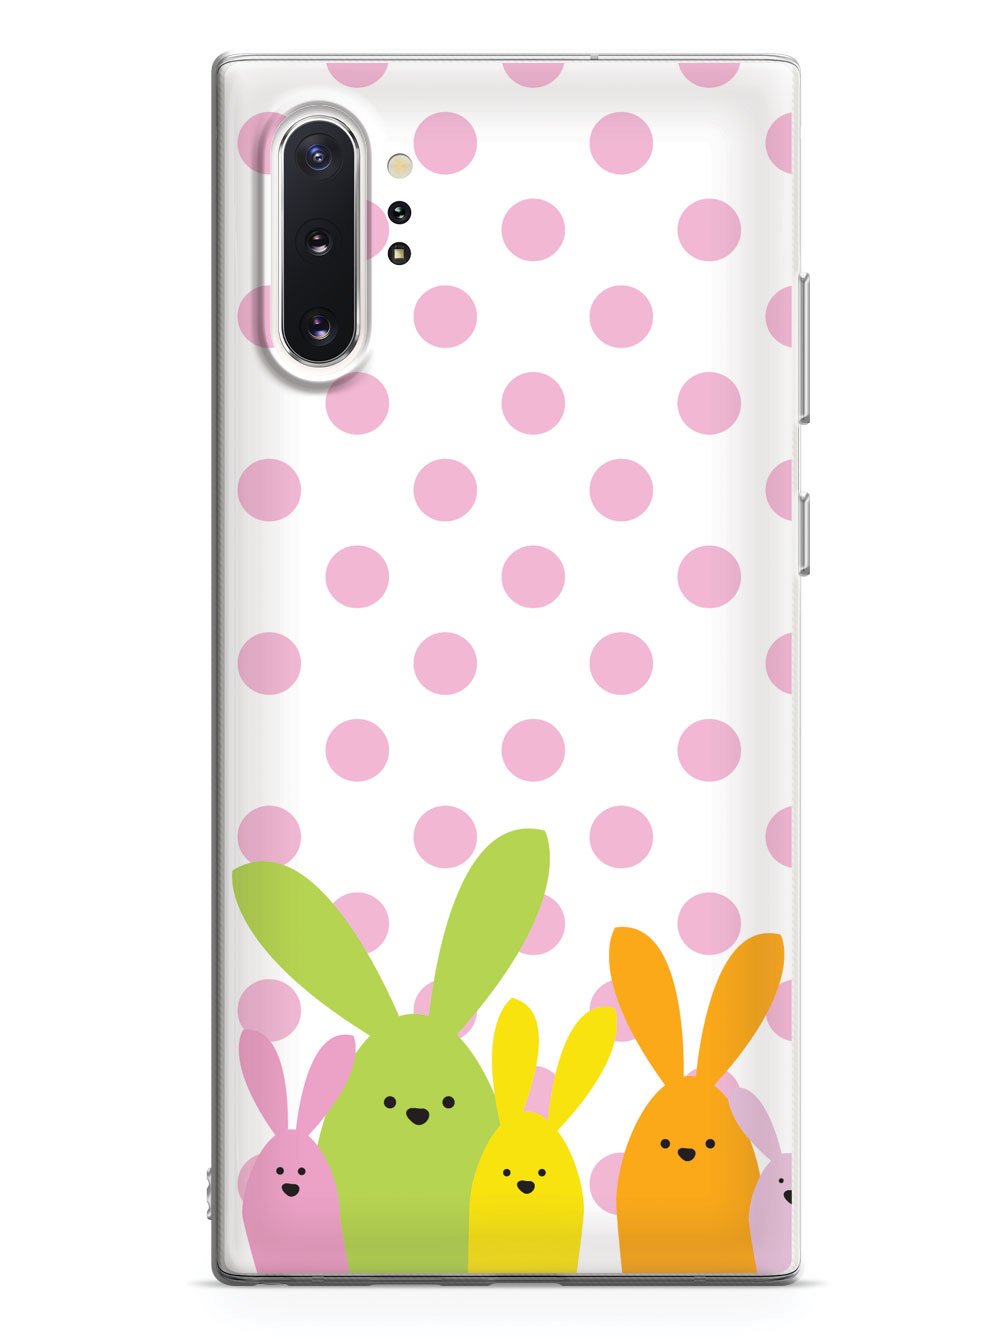 Adorable Easter Polka Dot Bunnies Case